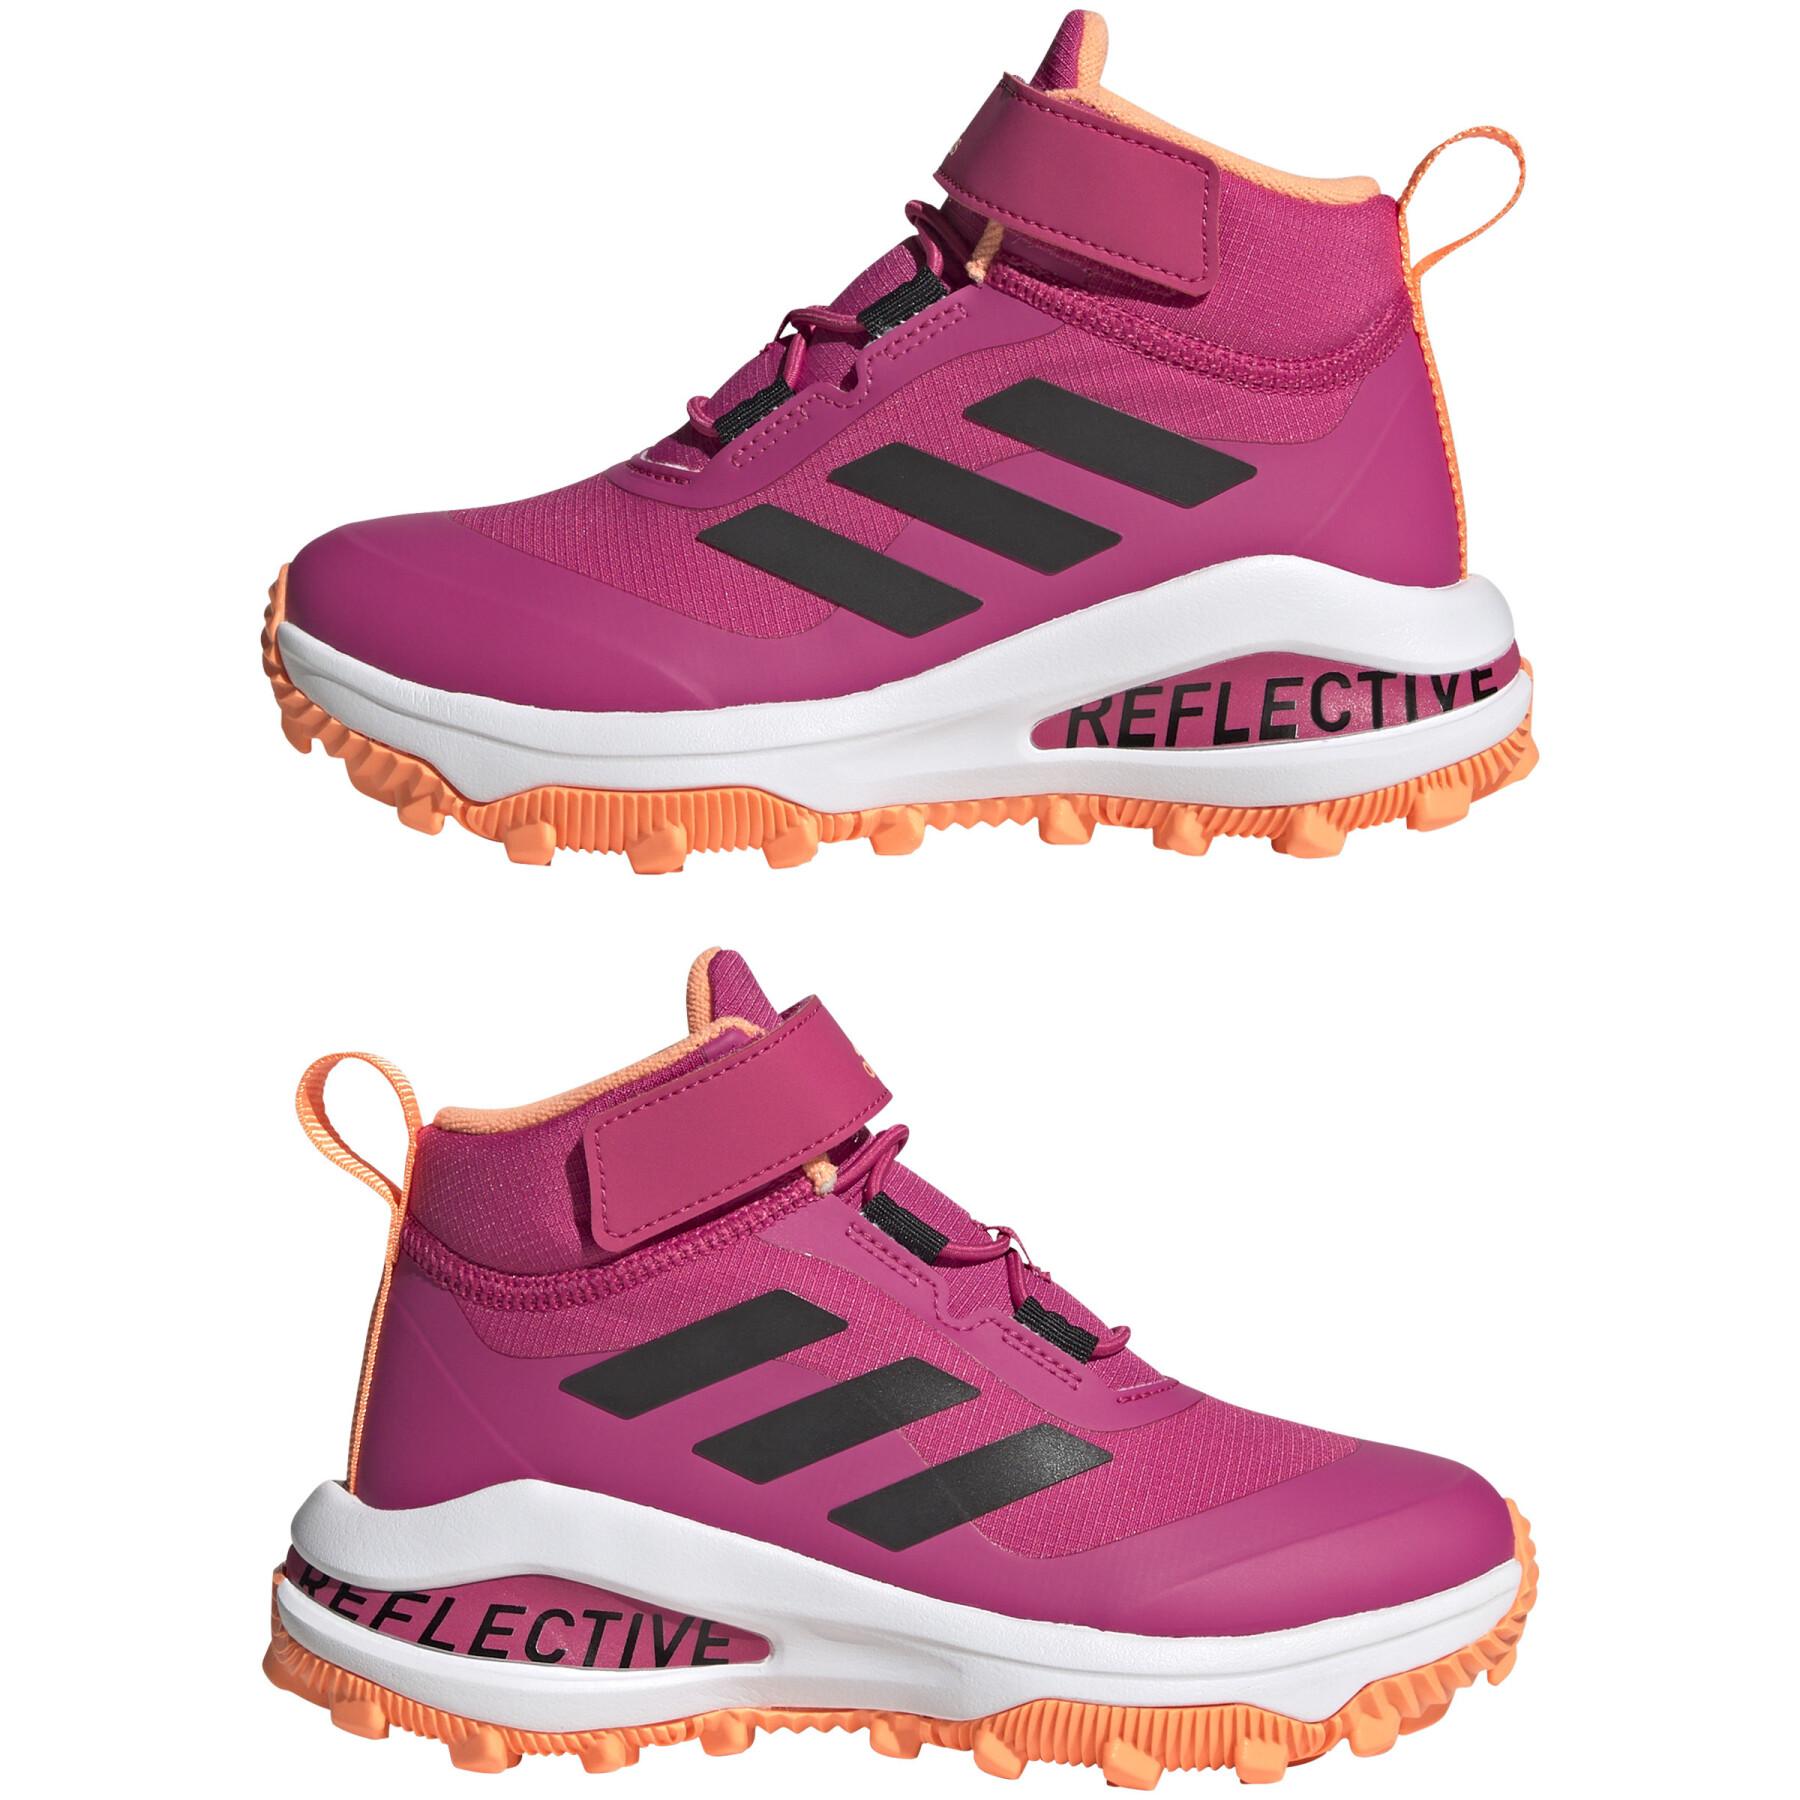 Chaussures de running fille adidas Fortarun All Terrain Cloudfoam Sport